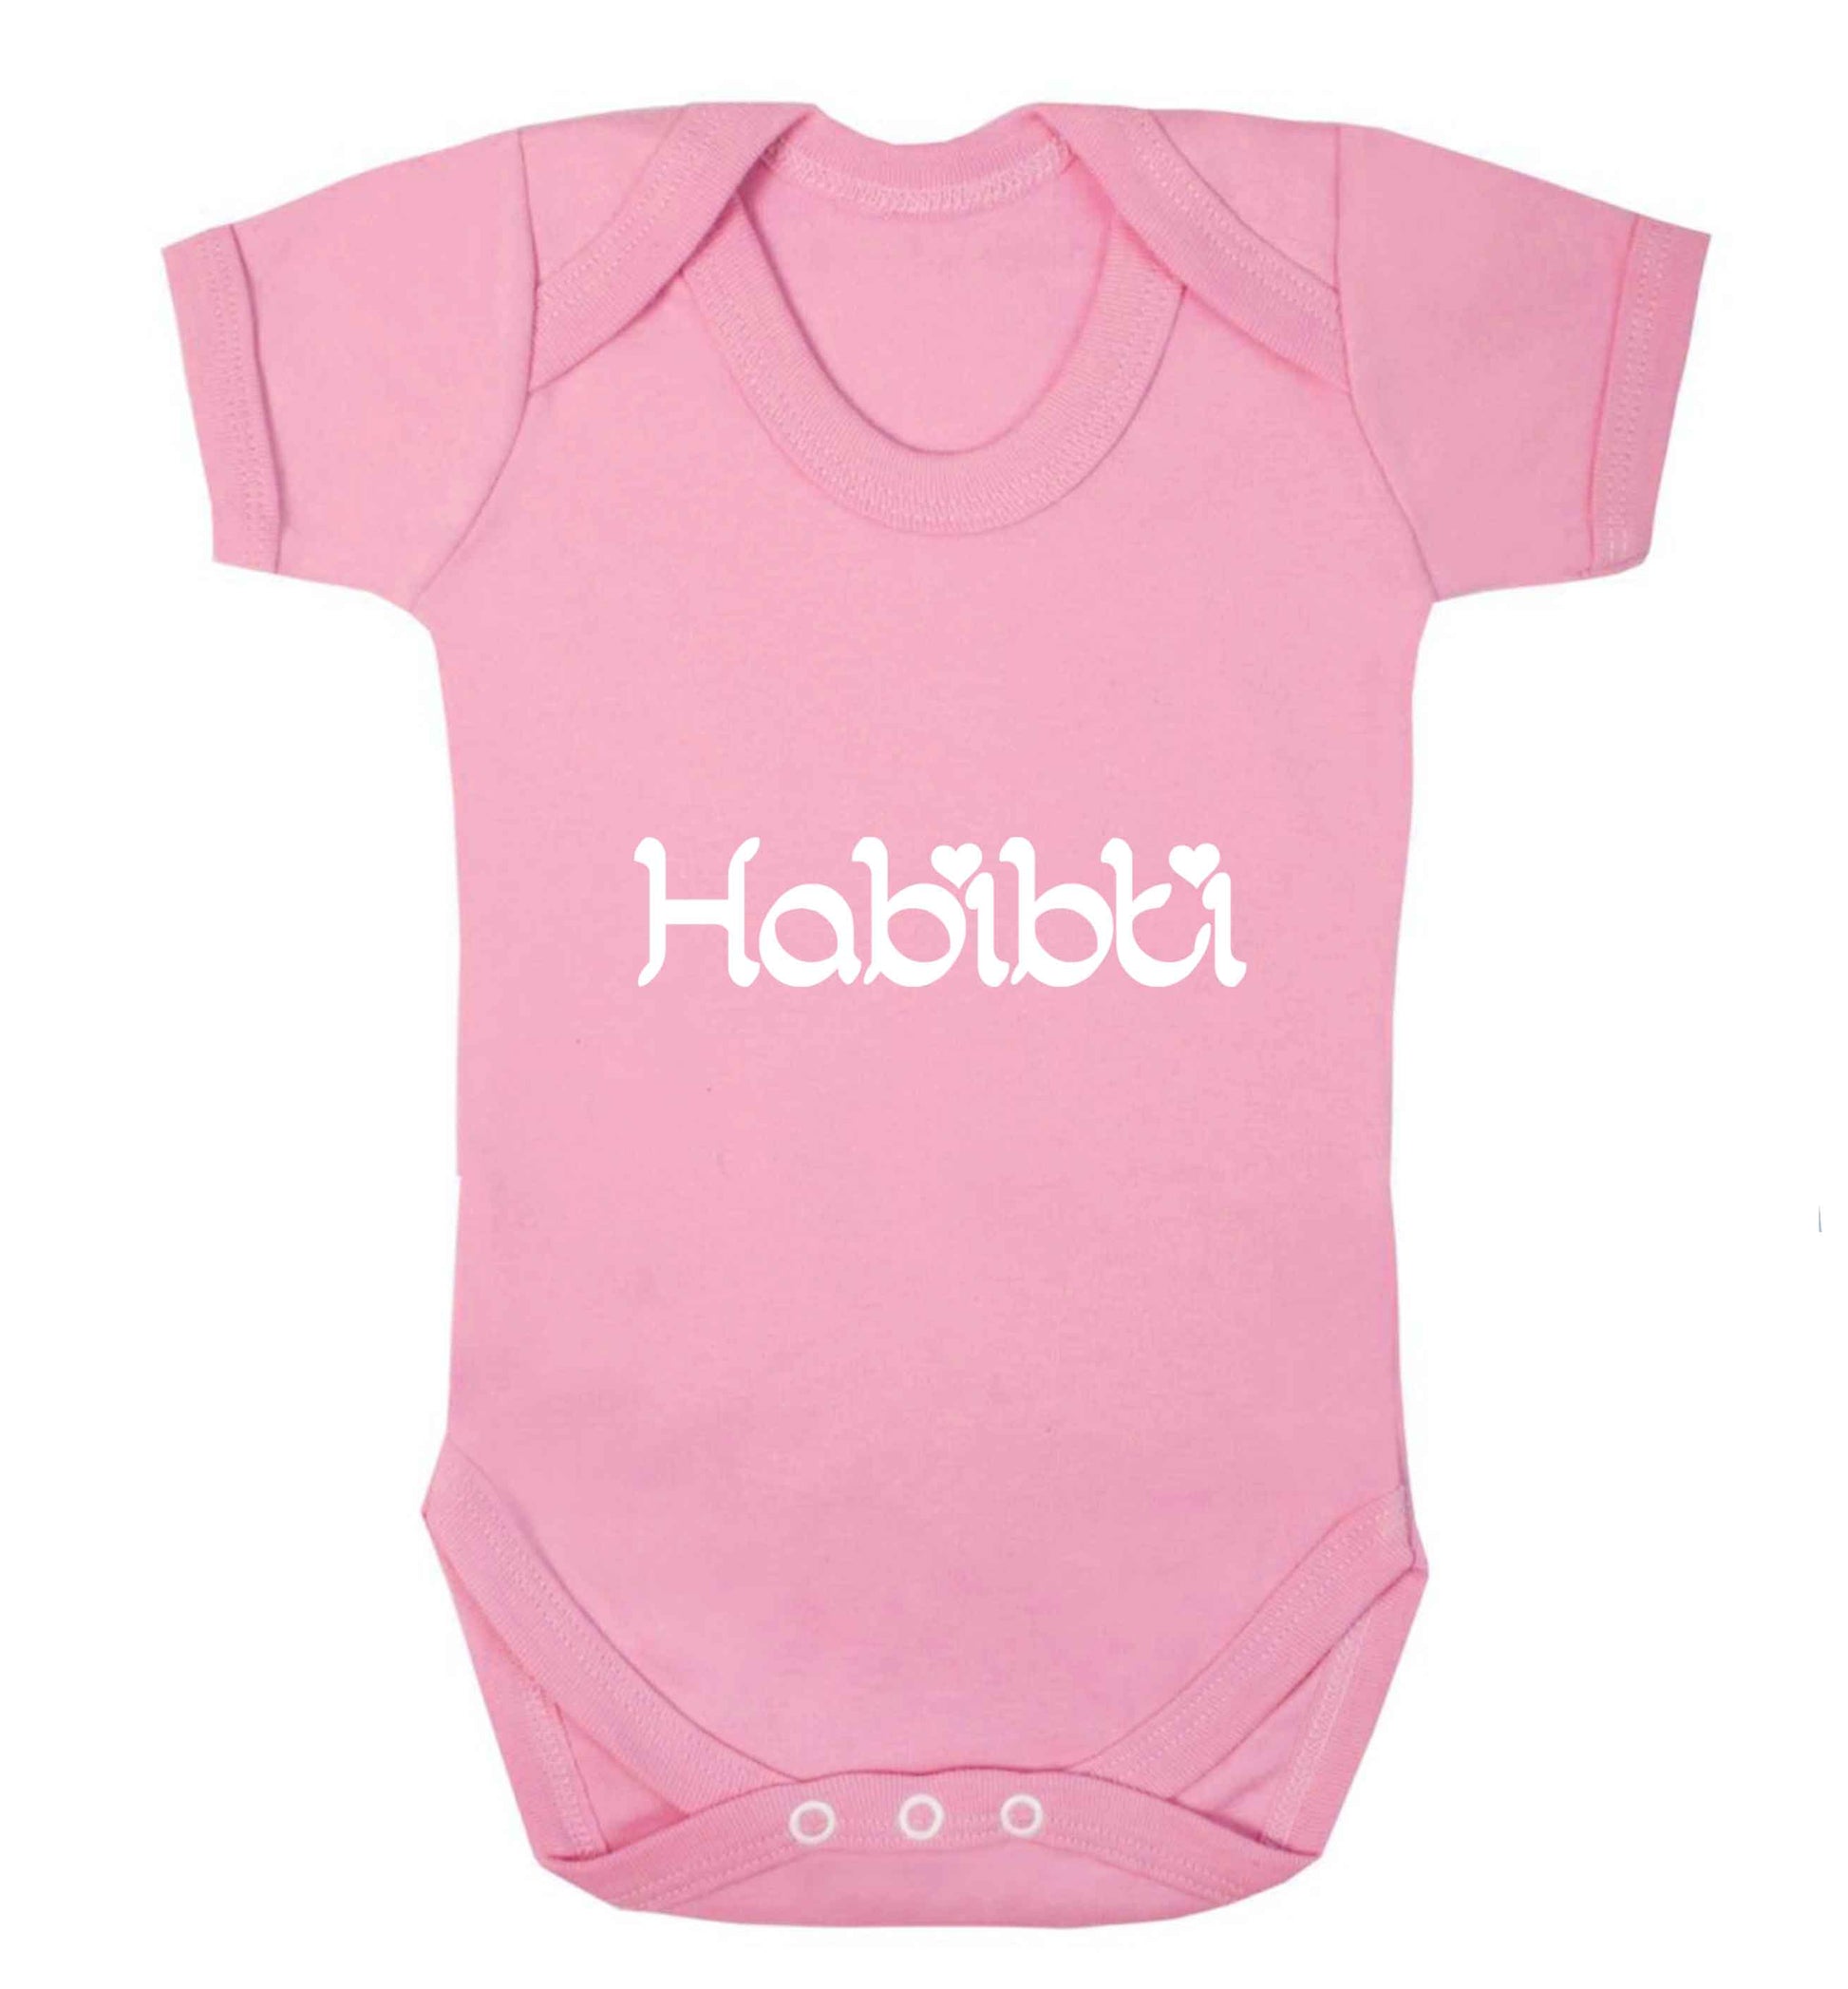 Habibiti baby vest pale pink 18-24 months